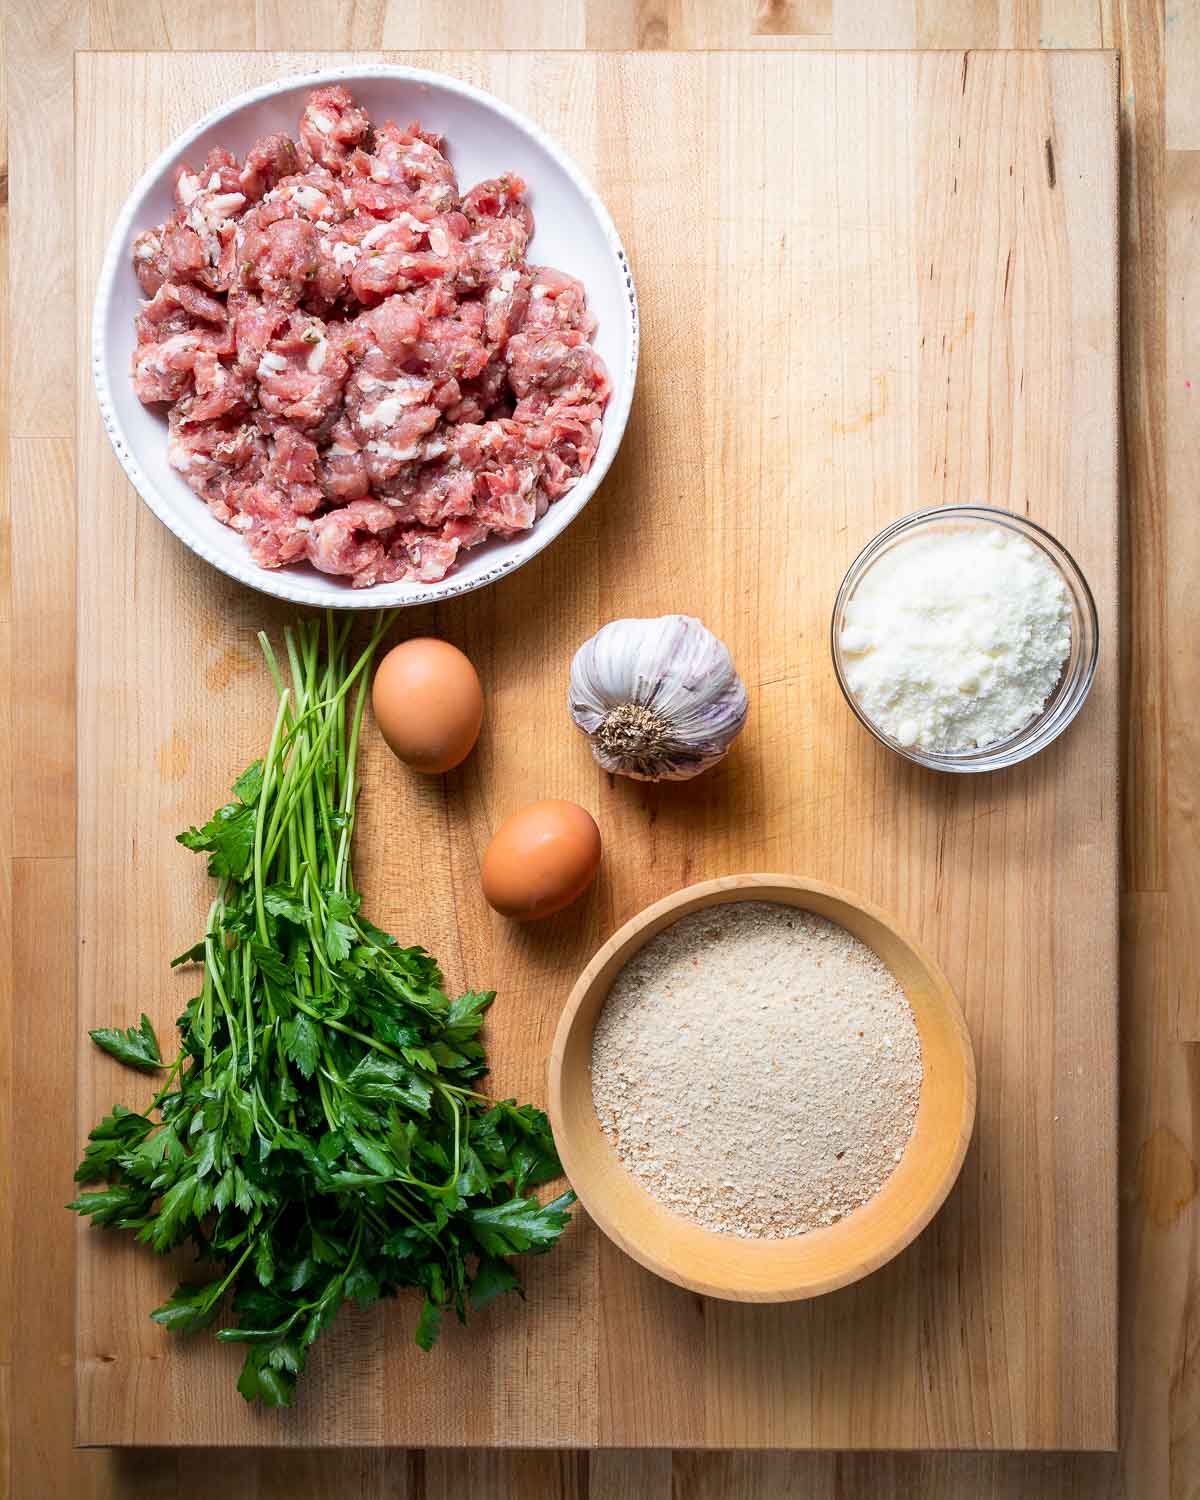 Ingredients shown: bulk sausage, parsley, eggs, garlic, and Pecorino Romano cheese.